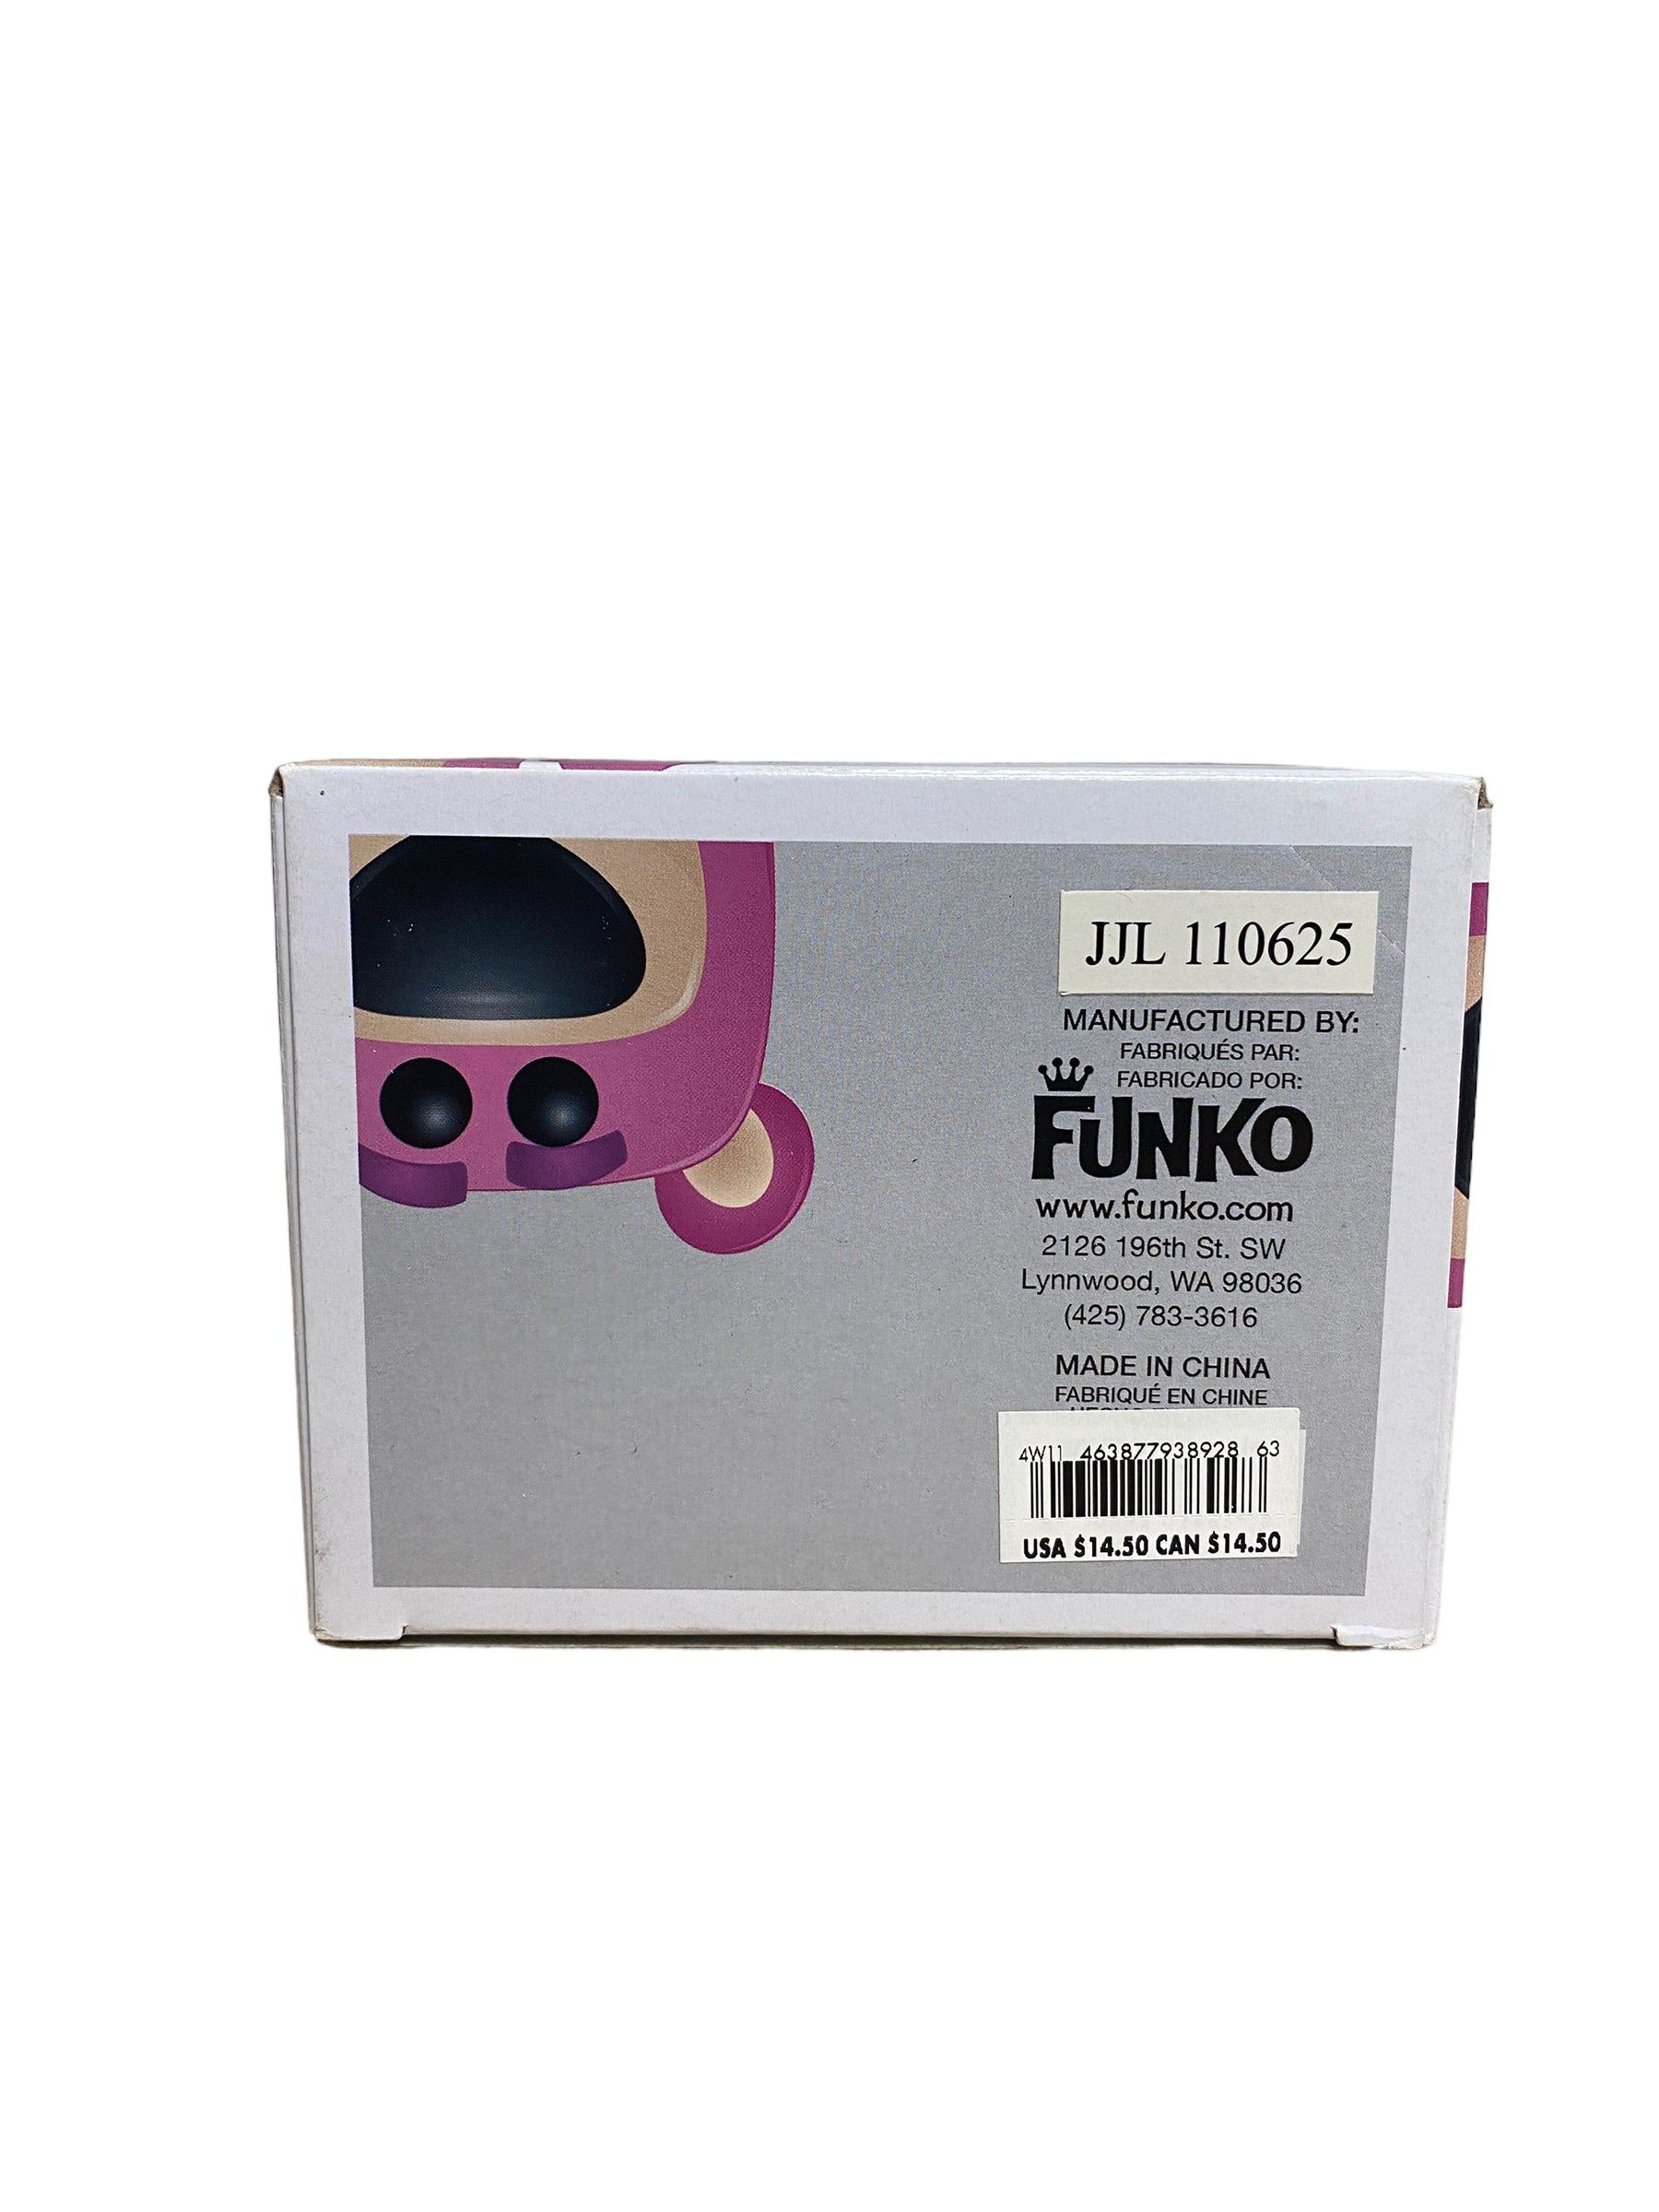 Lotso #13 (Flocked) Funko Pop! - Disney Series 2 - D23 2011 Exclusive LE480 Pcs - Condition 7/10